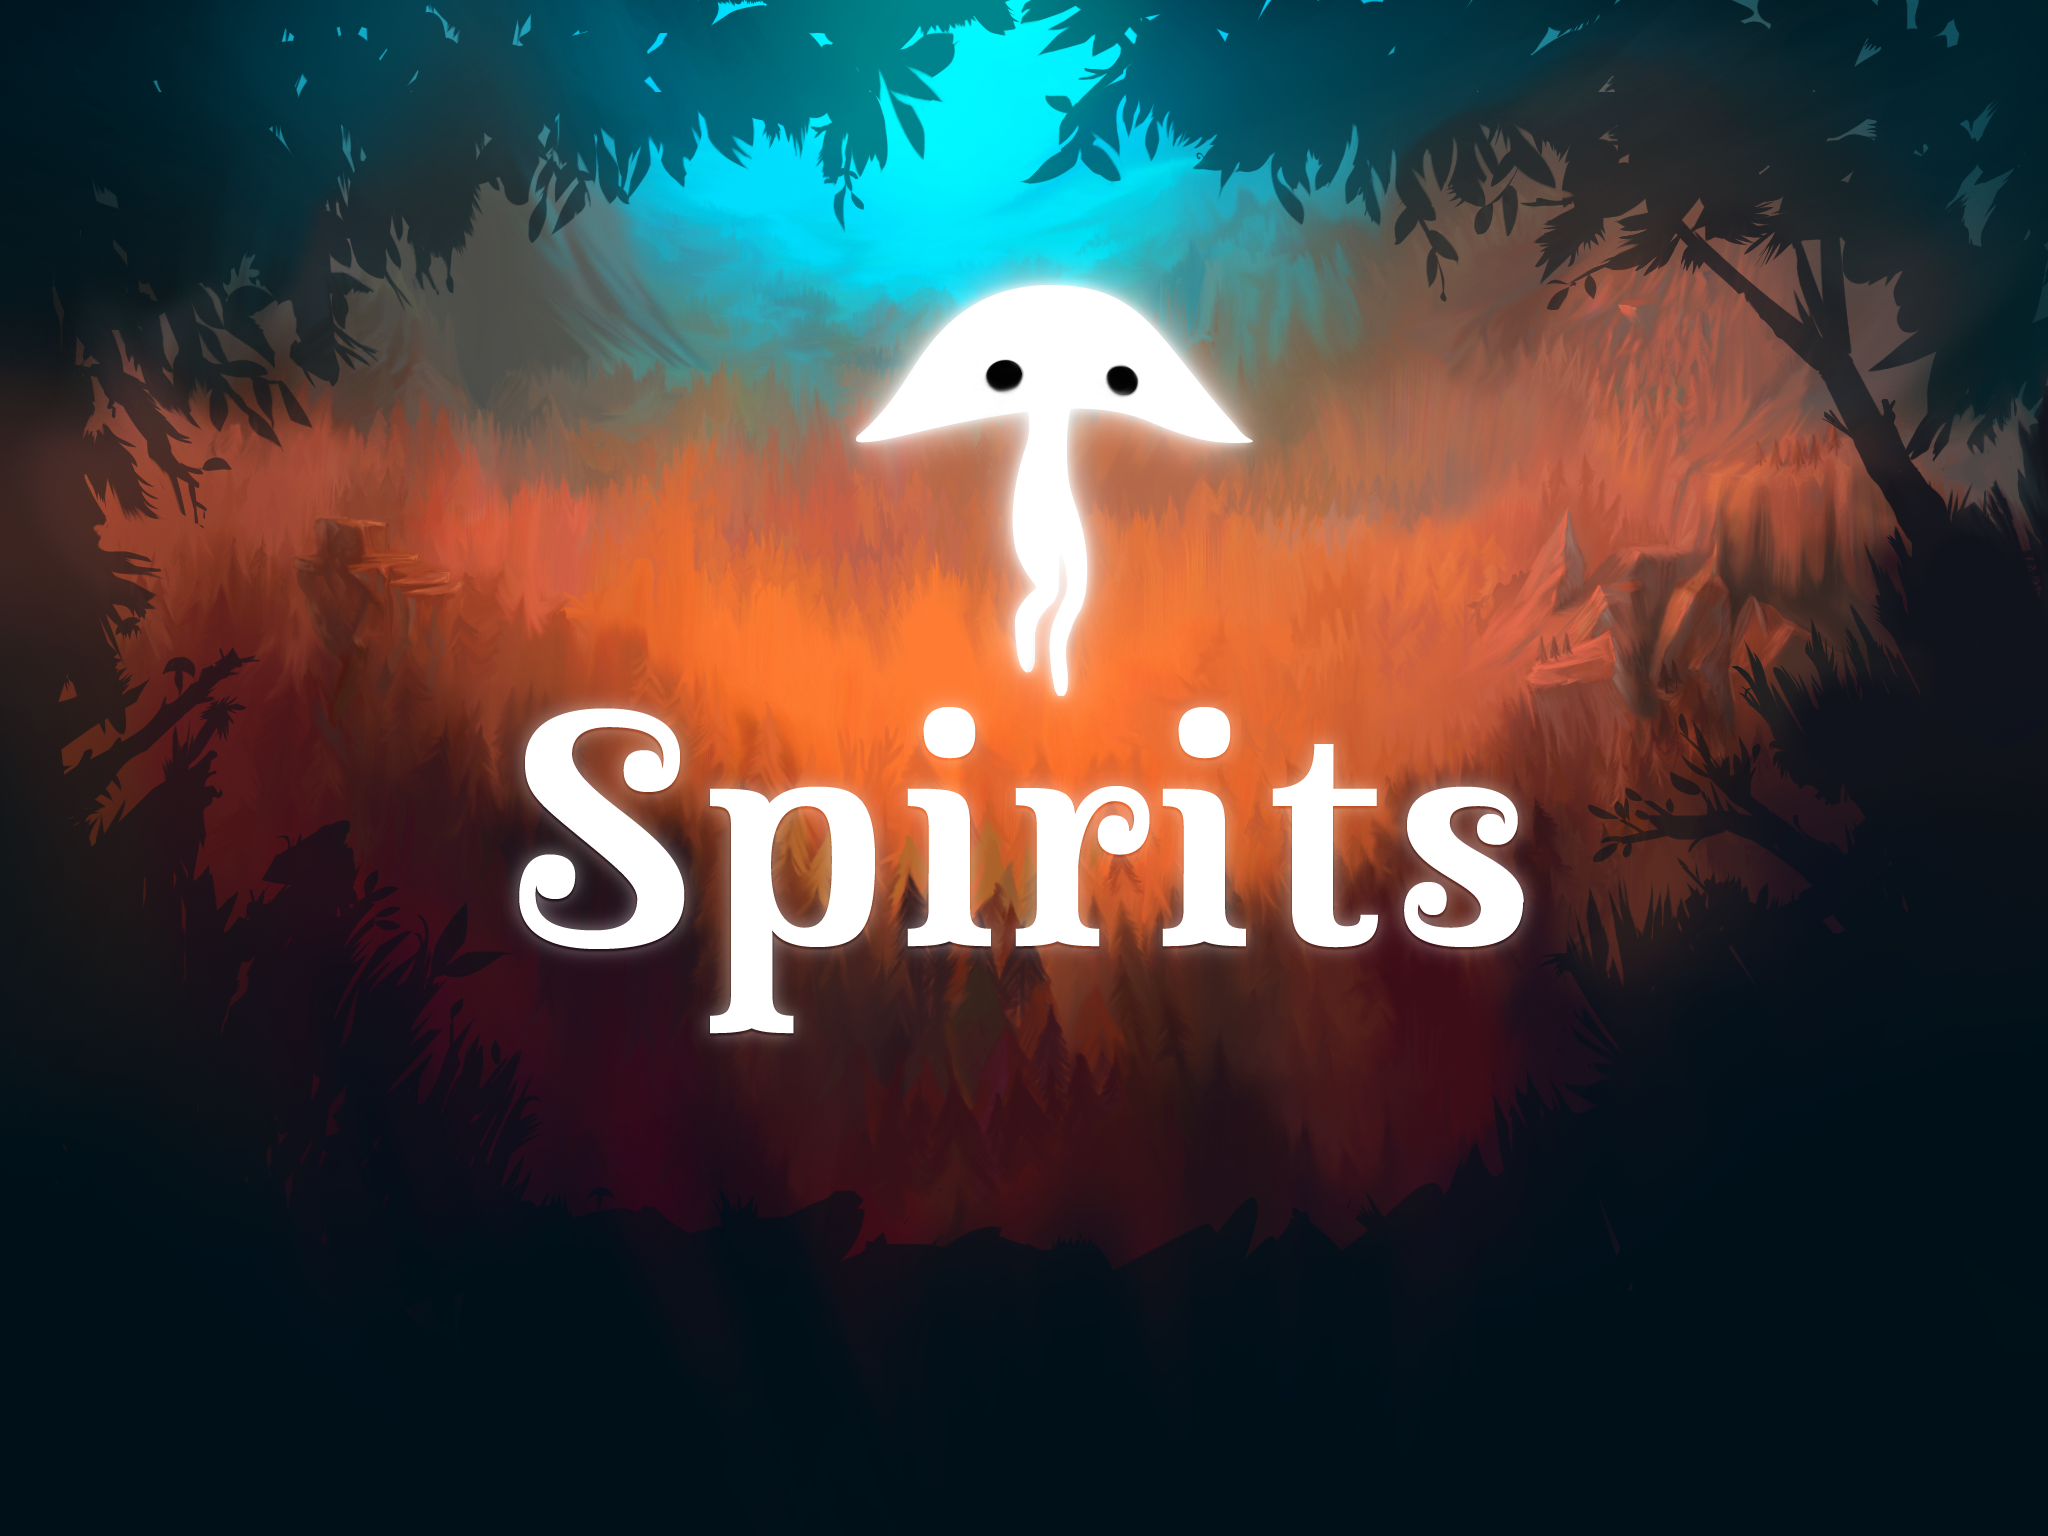 Spirits Character and Logo